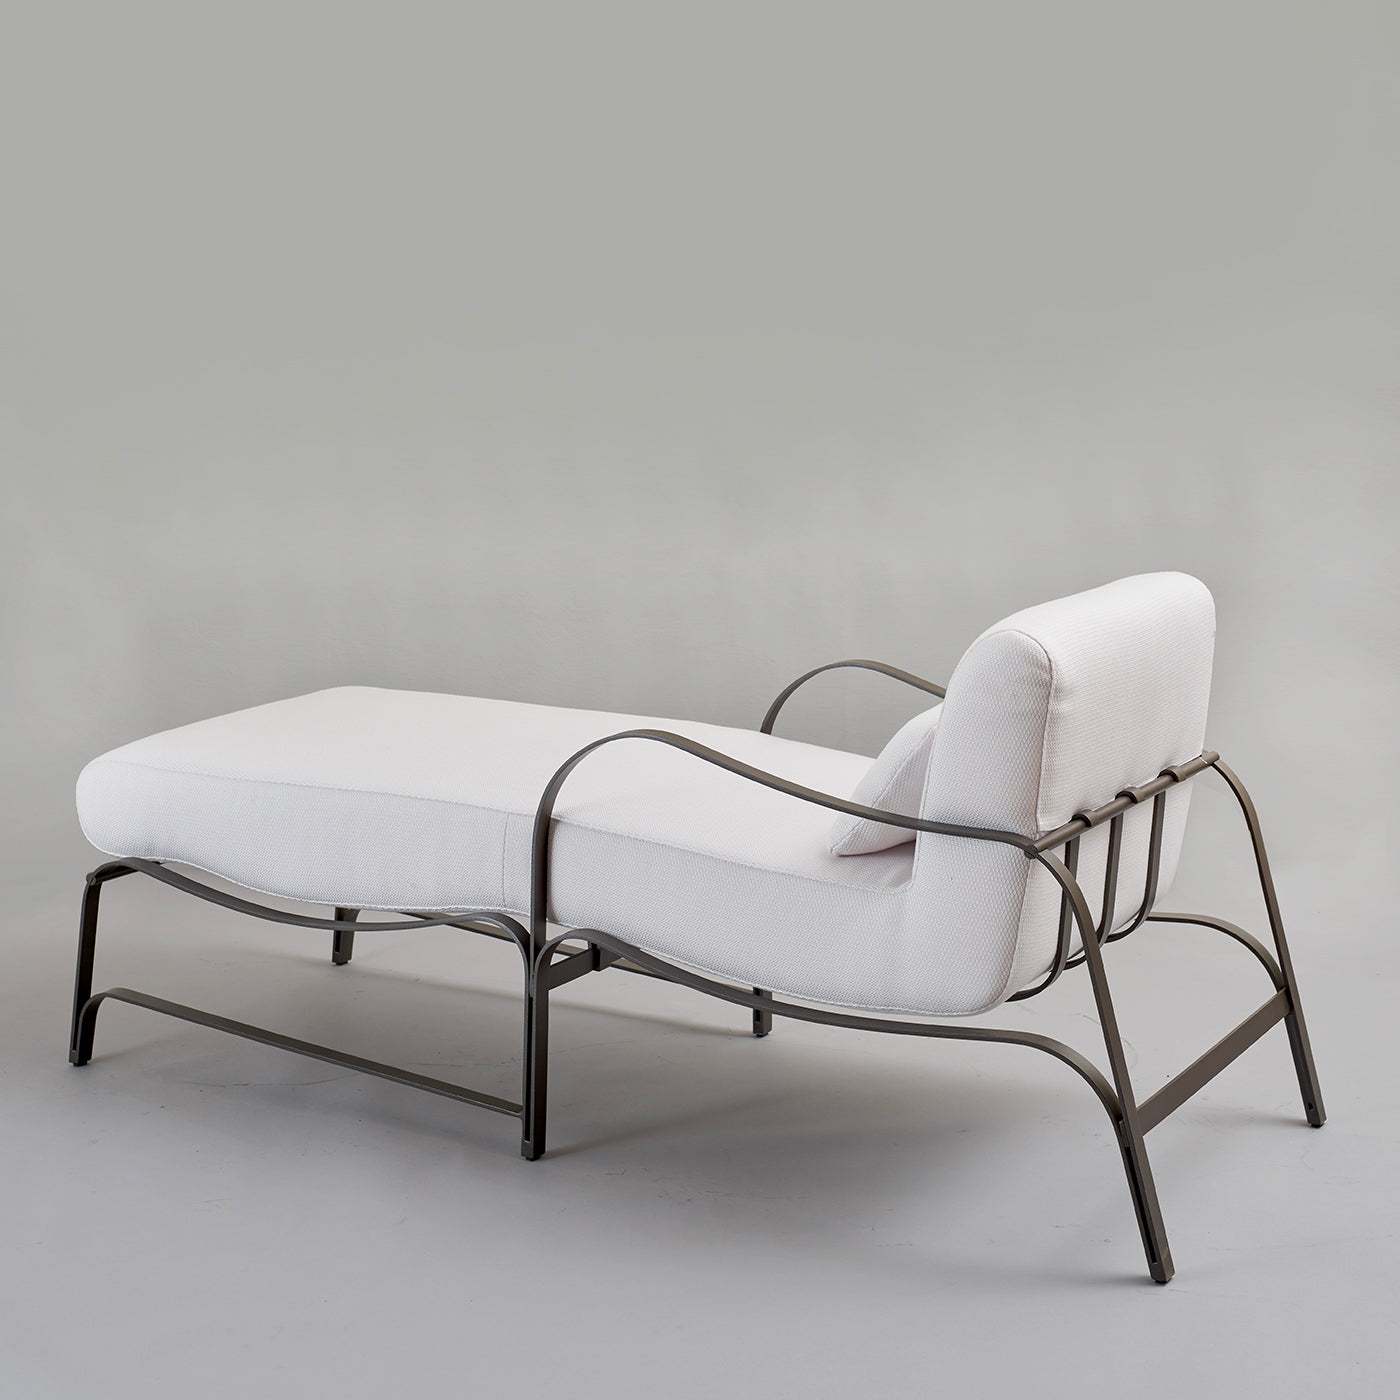 Chaise longue Amalfi blanca y gris de Studio 63 en acero inoxidable - Vista alternativa 2